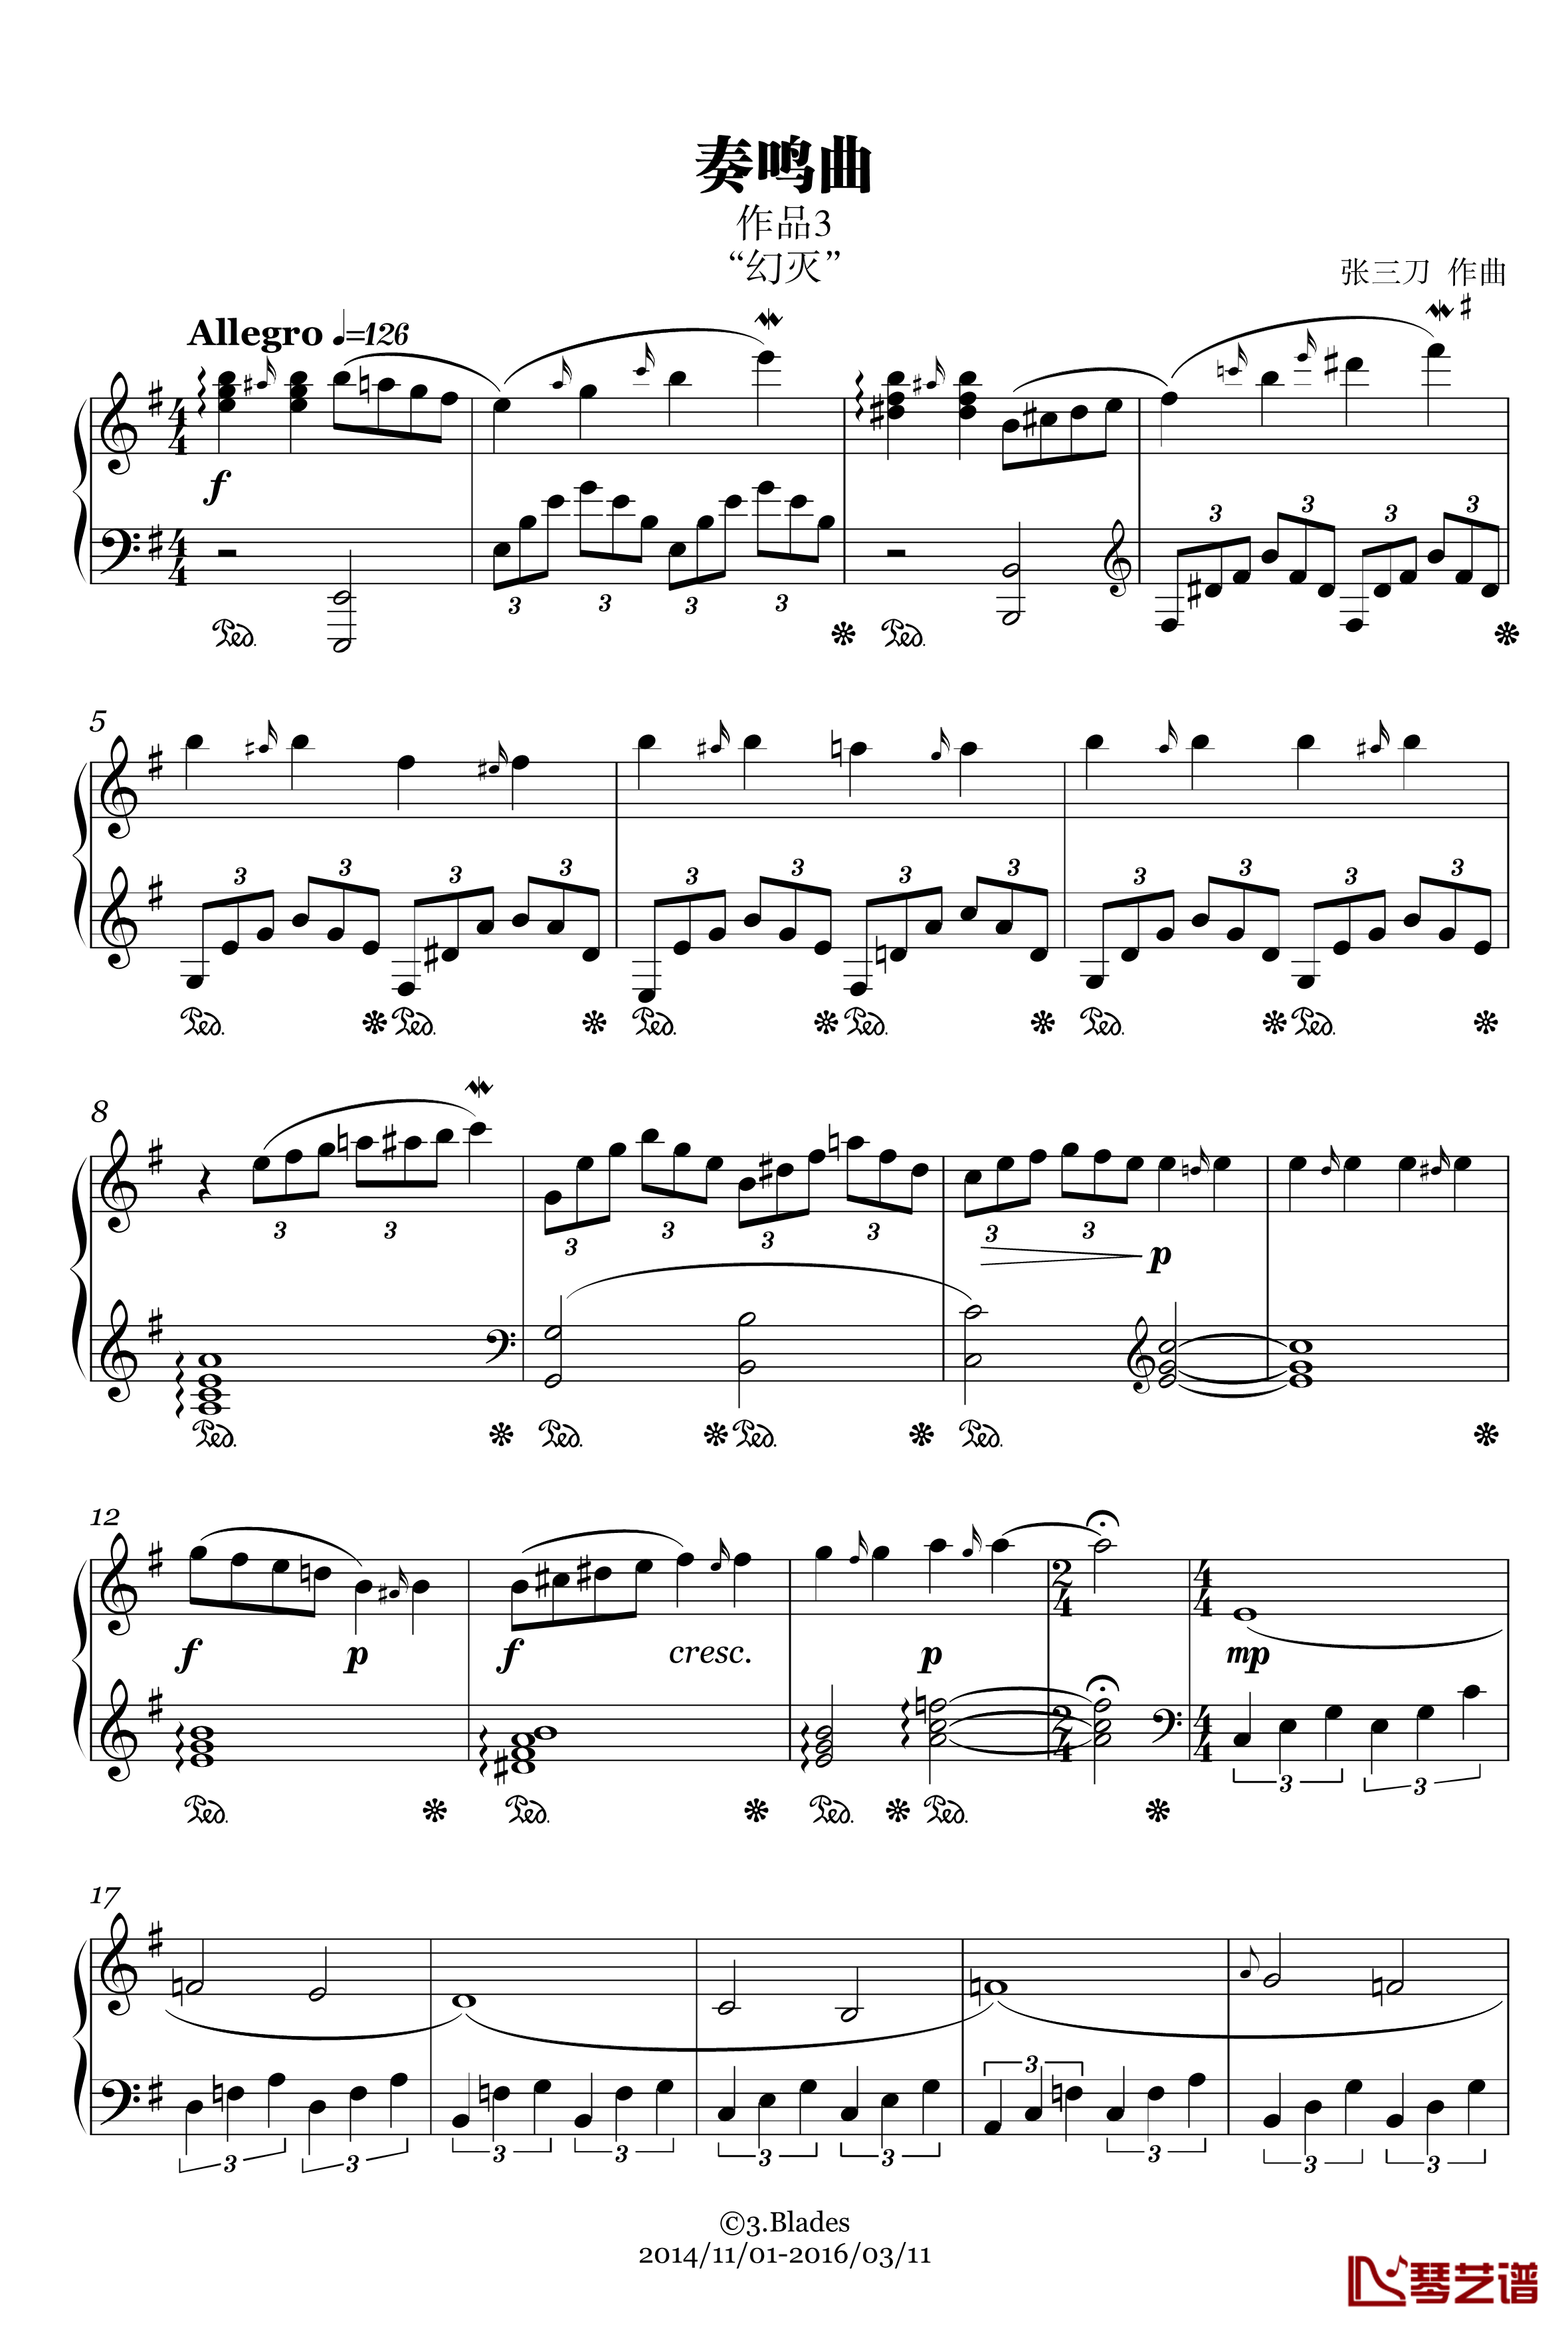 第1号钢琴奏鸣曲“幻灭”钢琴谱-作废-张三刀1